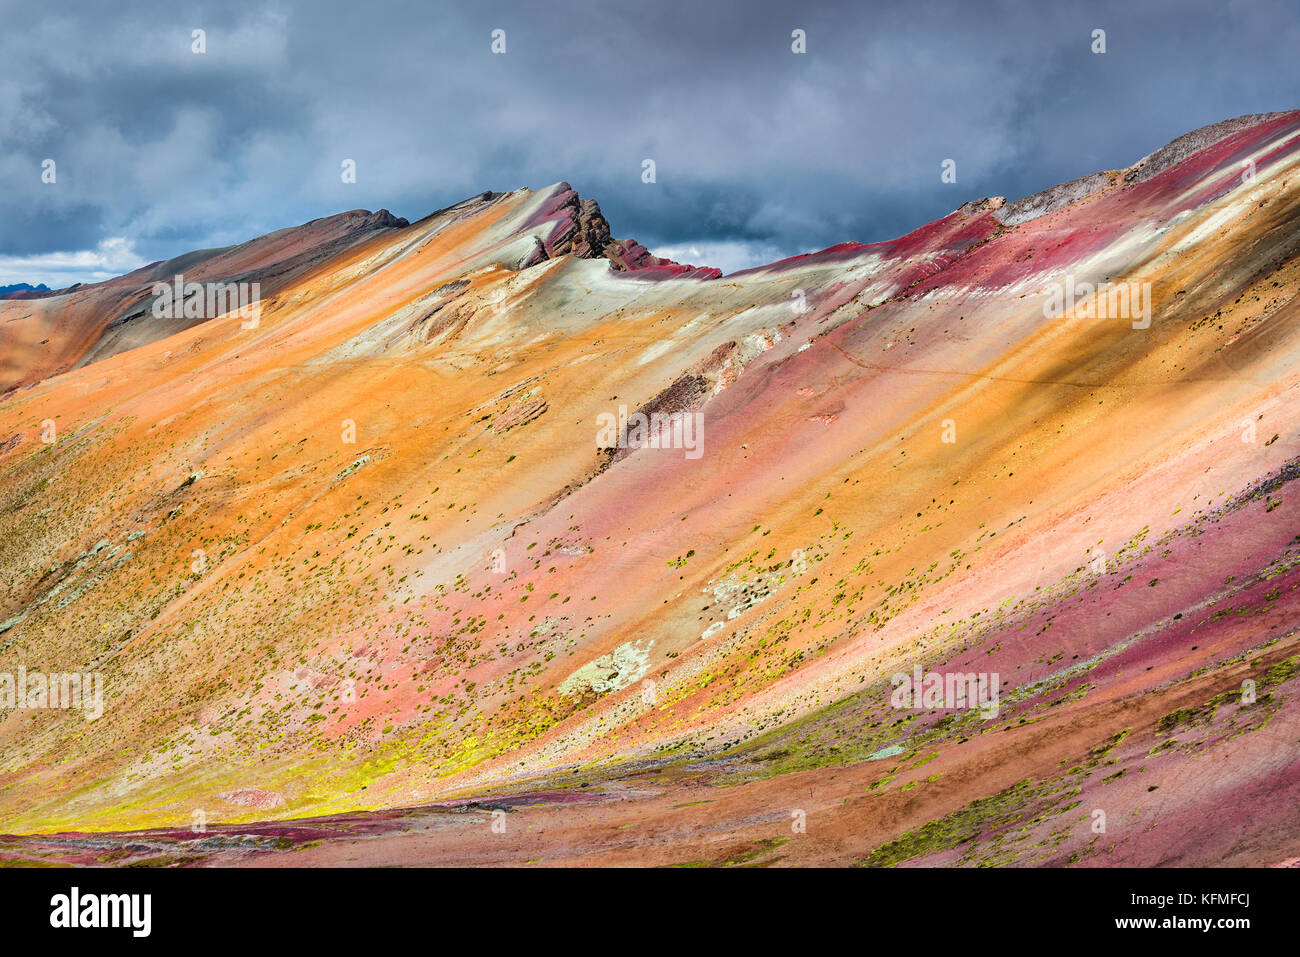 Vinicunca, Perù - Winicunca Rainbow Mountain (5200 m) nelle Ande Cordillera de los Andes, regione di Cusco in Sud America. Foto Stock